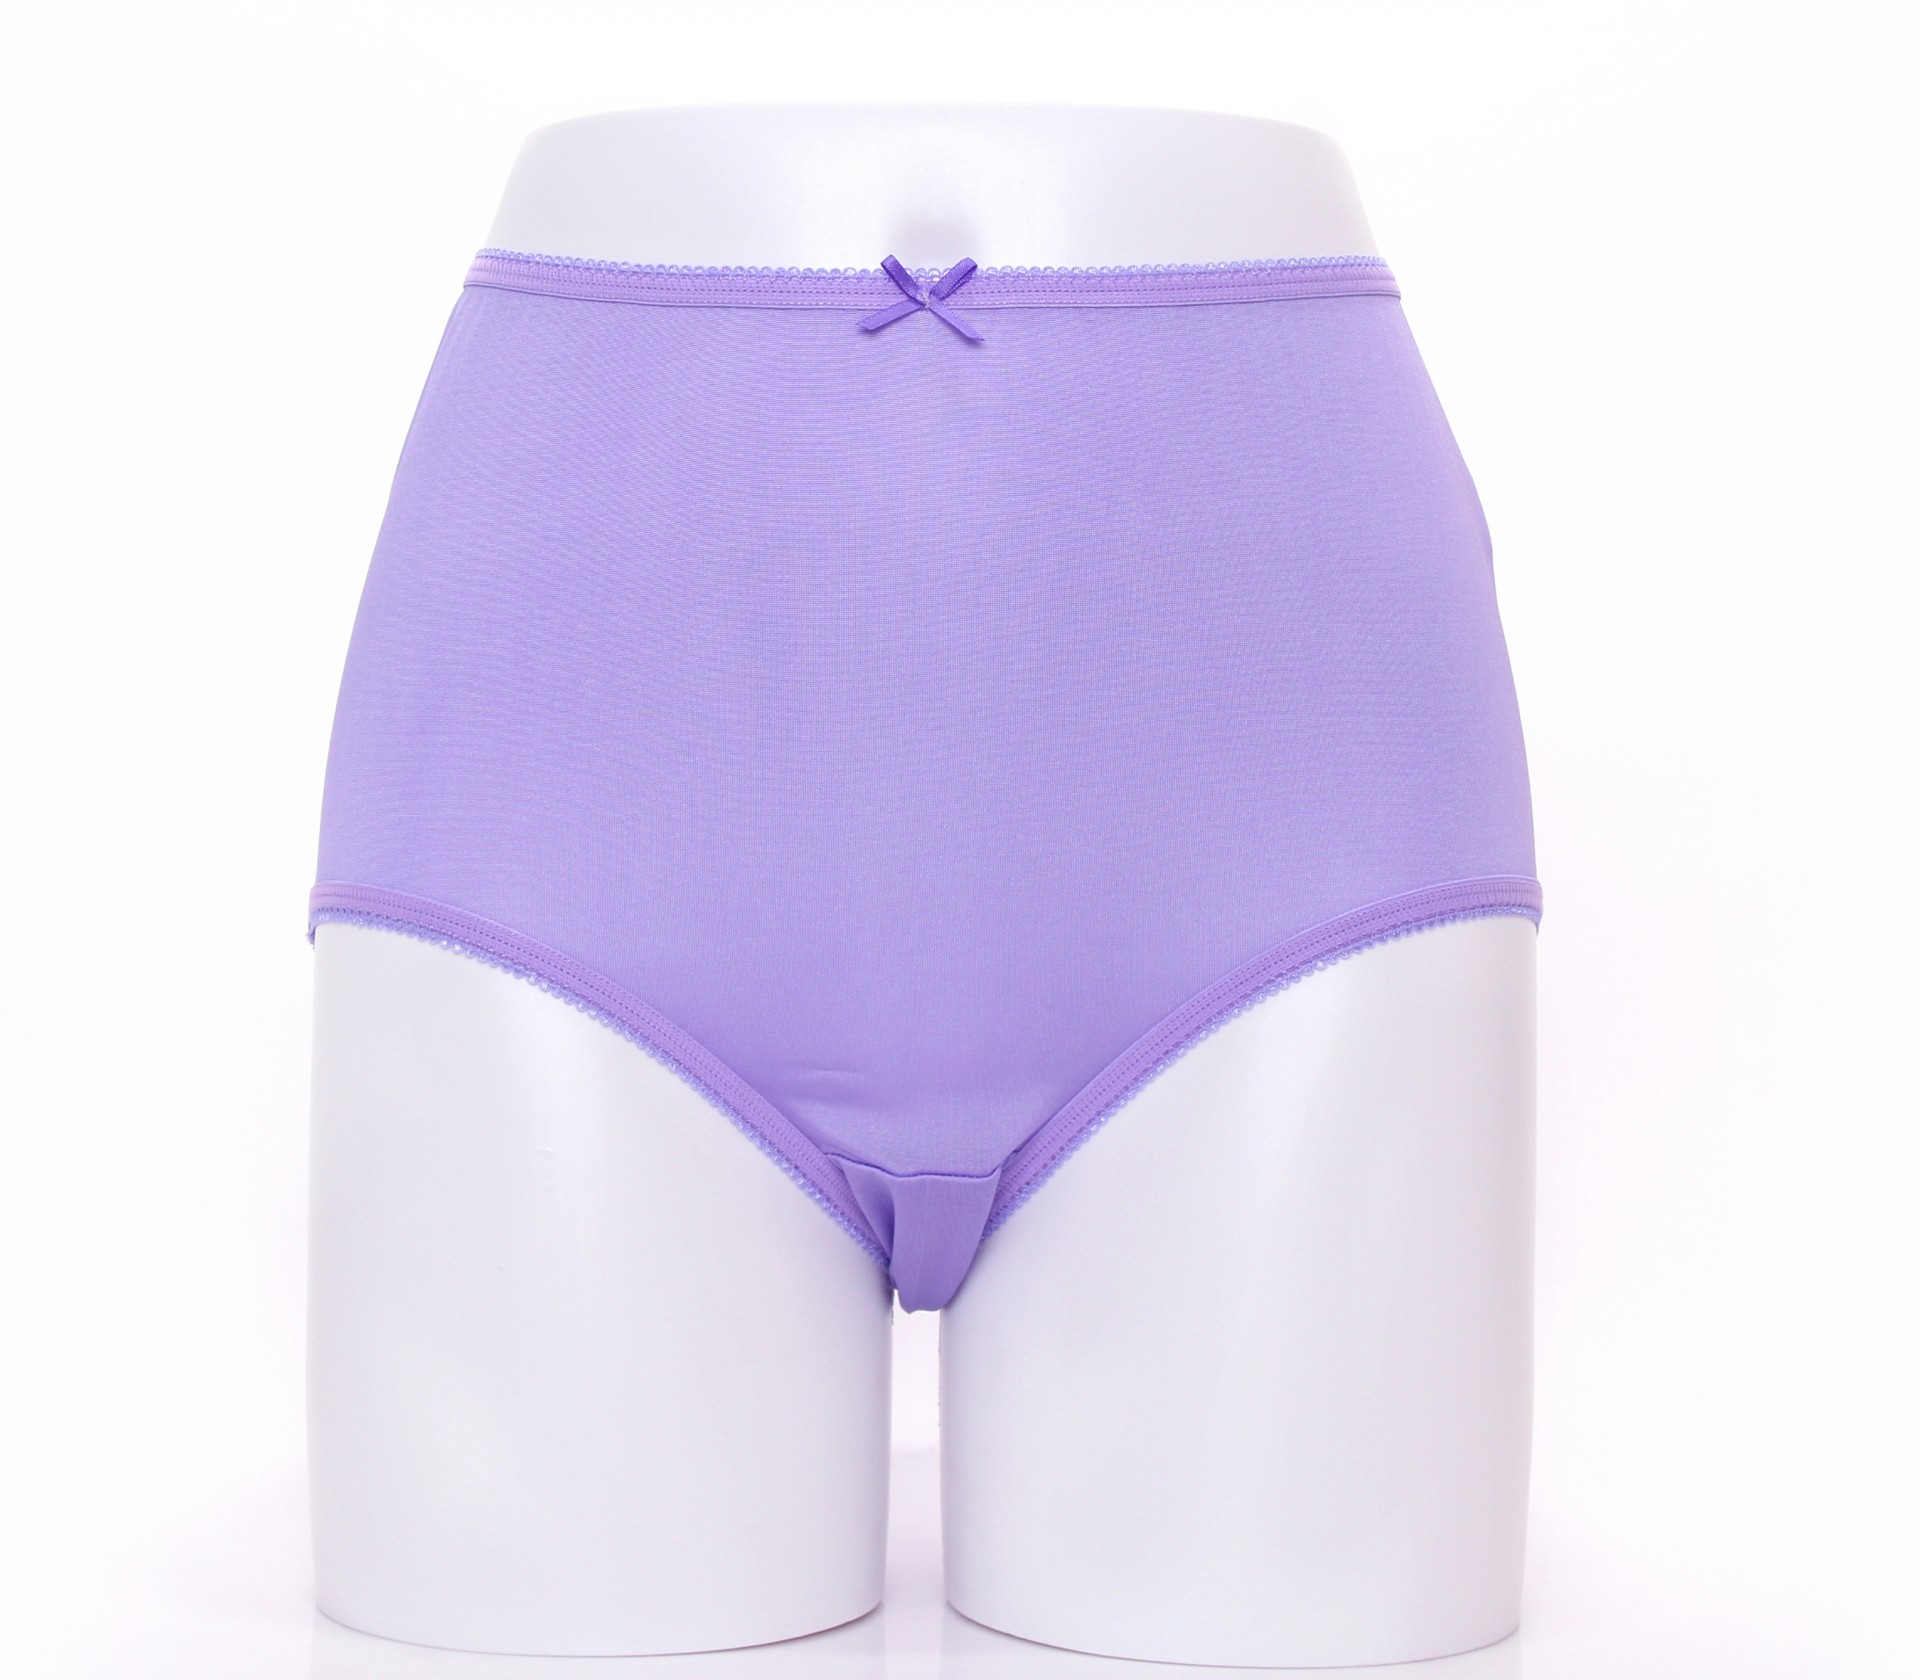 闕蘭絹30針高腰寵愛優雅100%蠶絲內褲-88901(紫)